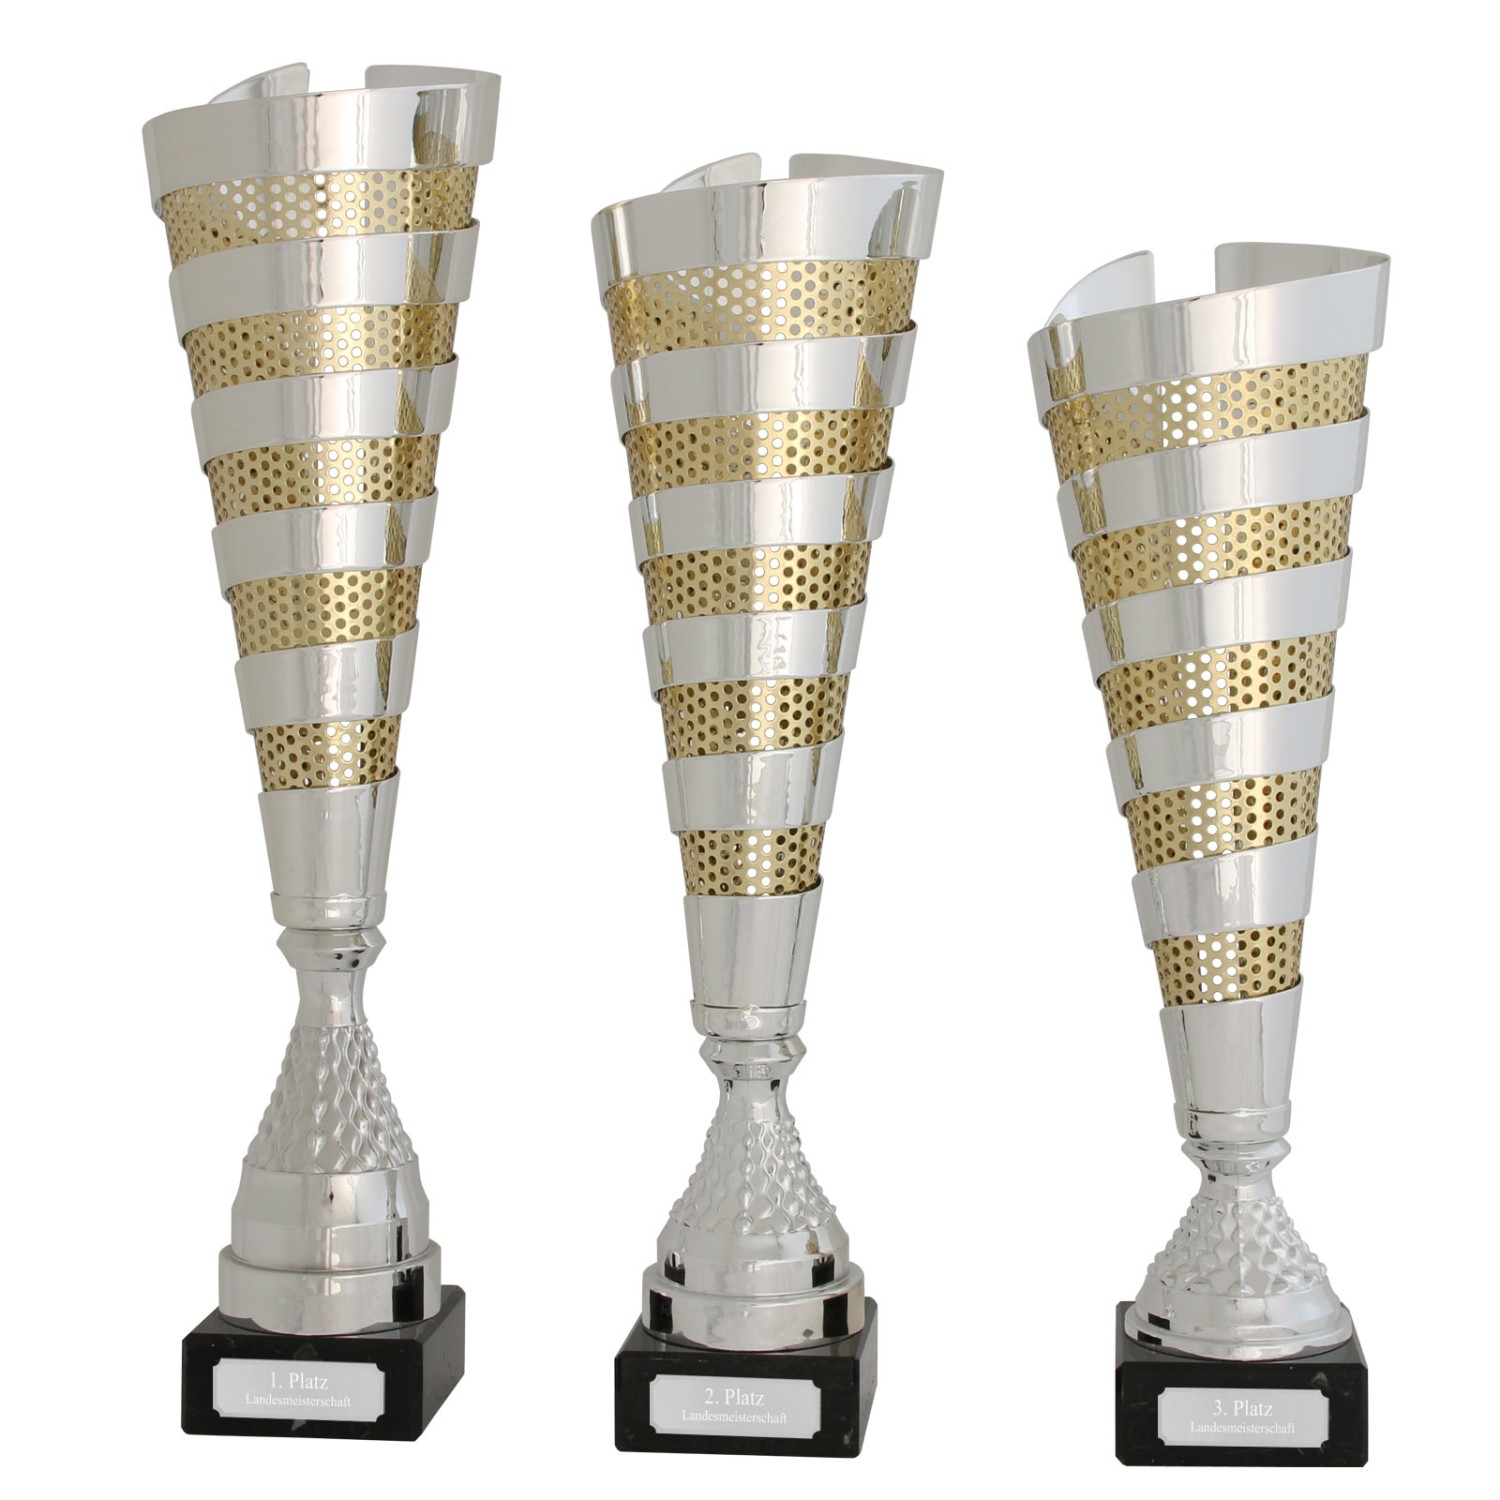 0. Foto Pokal Pokalset CLUNY Metall silber gold 3 Größen mit Gravur (Größe: Set je 1x S, M und L)